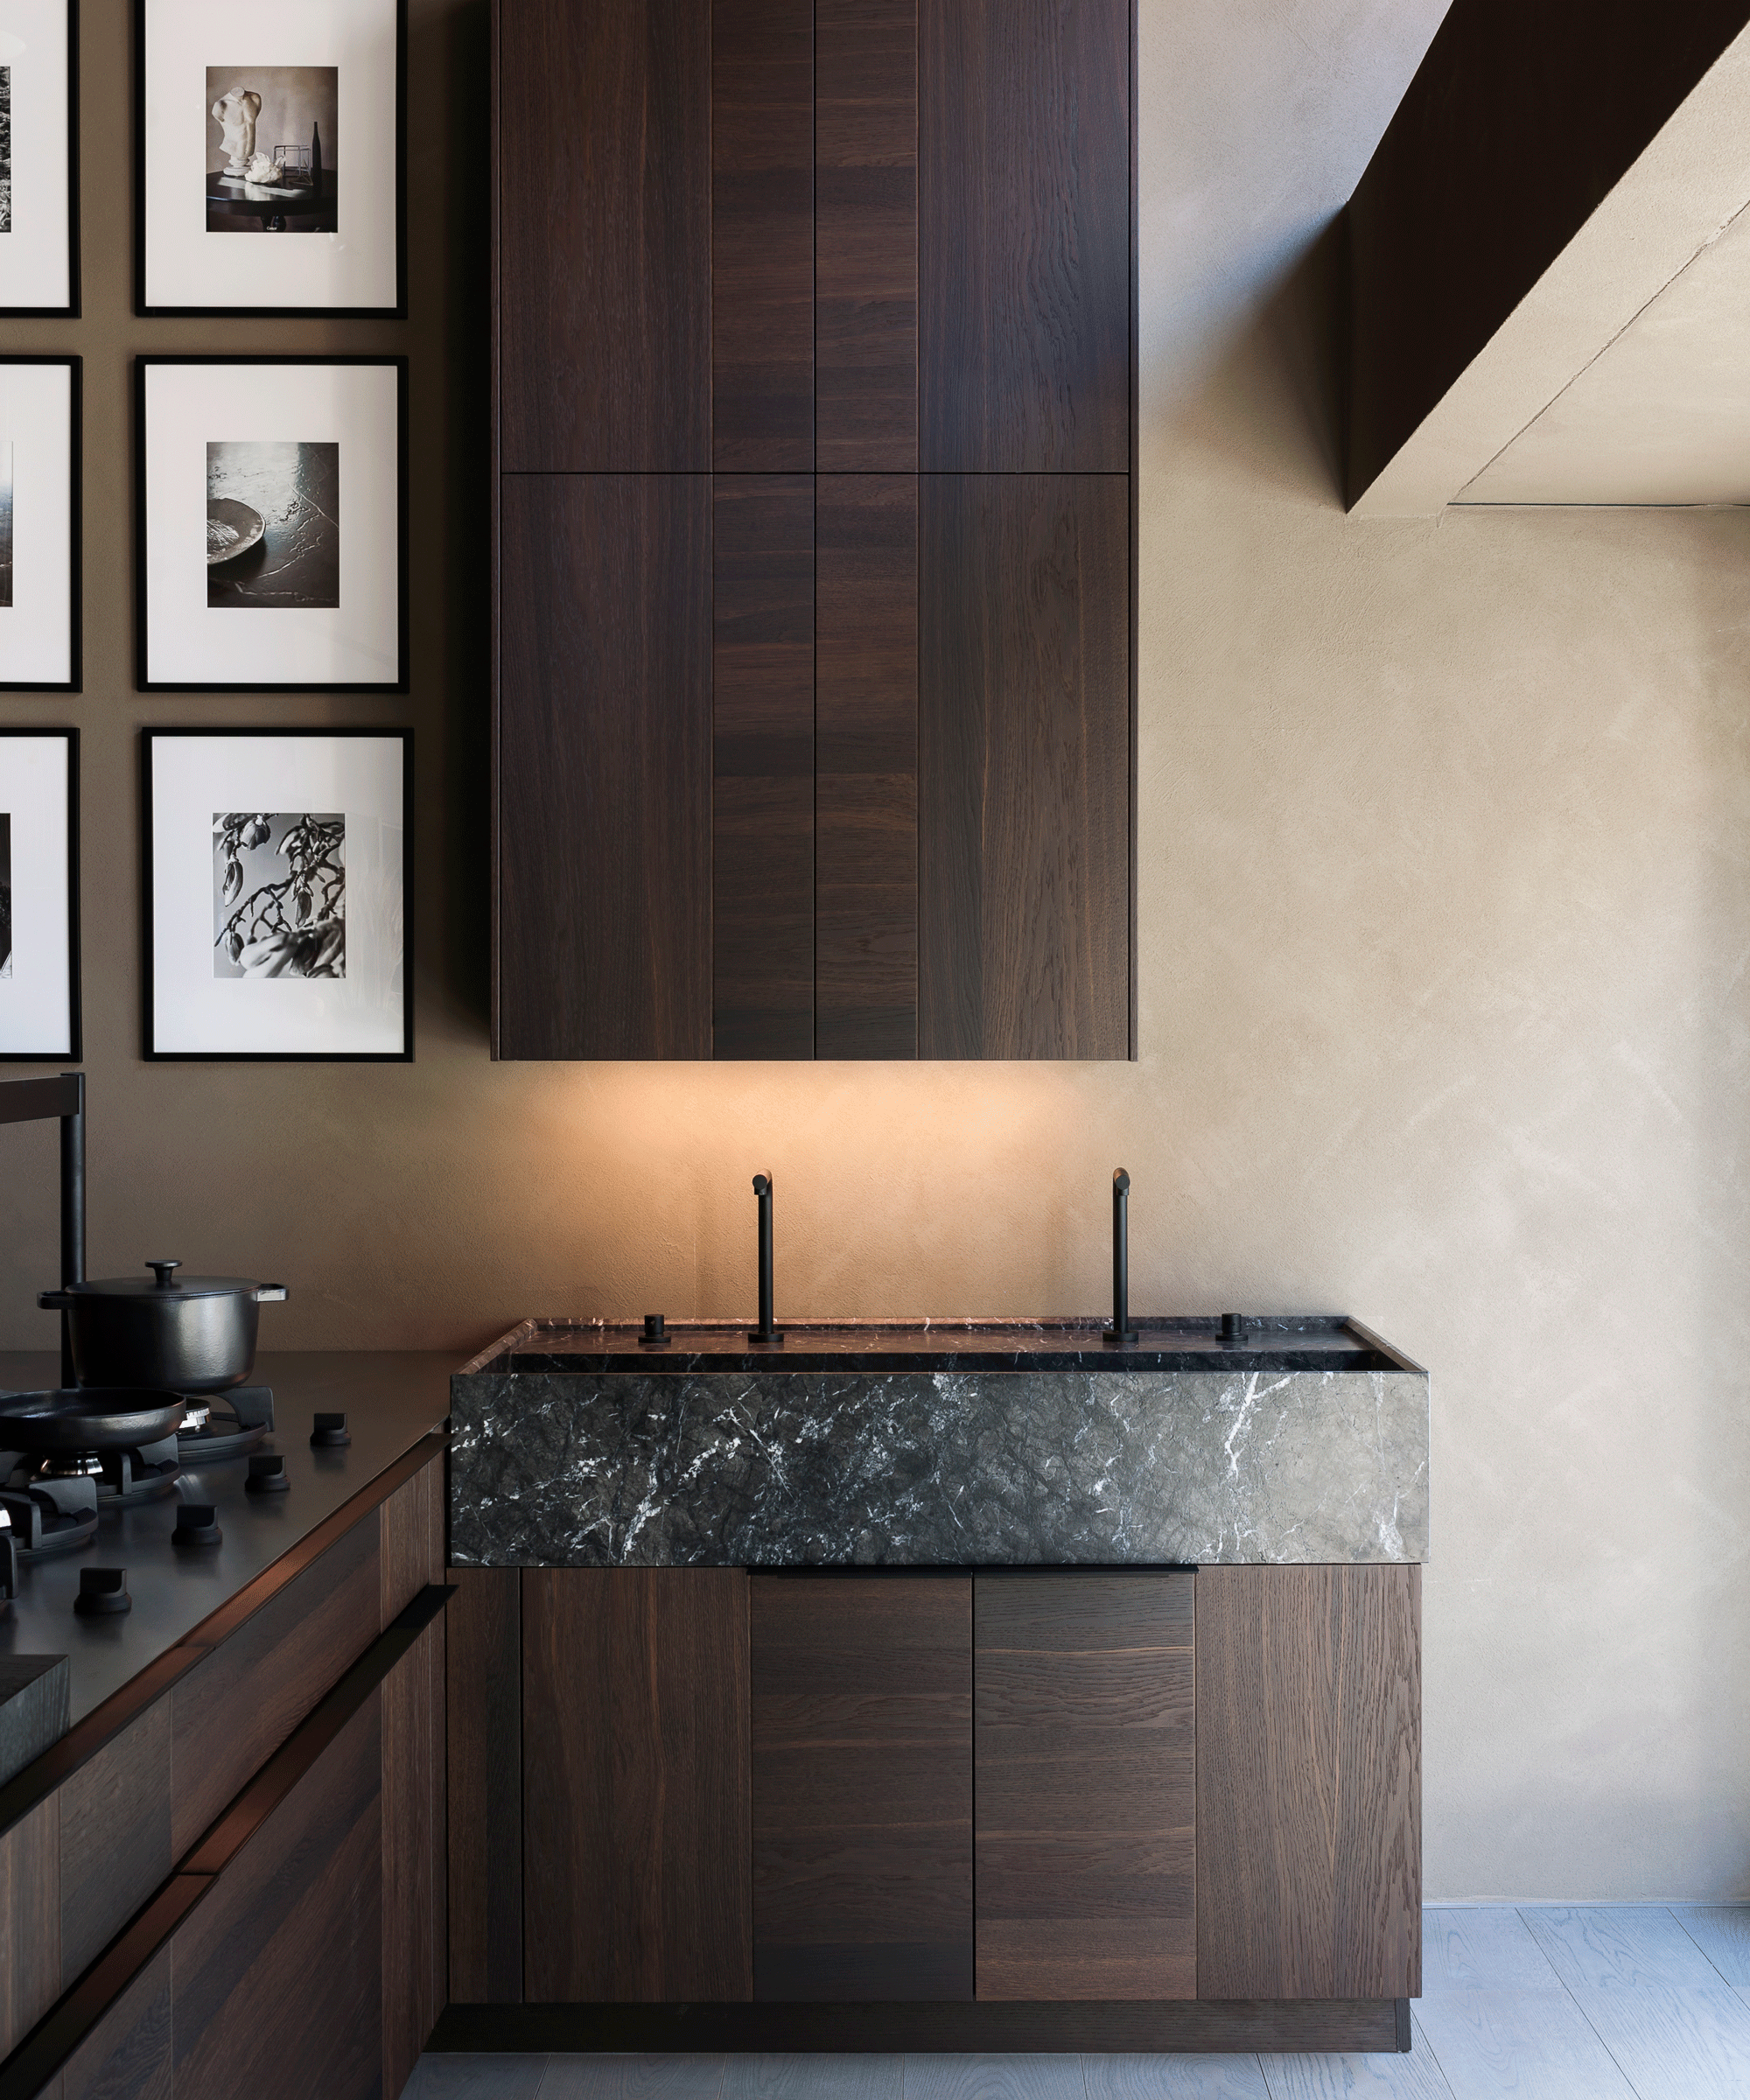 wood kitchen cabinet ideas - dark wooden kitchen